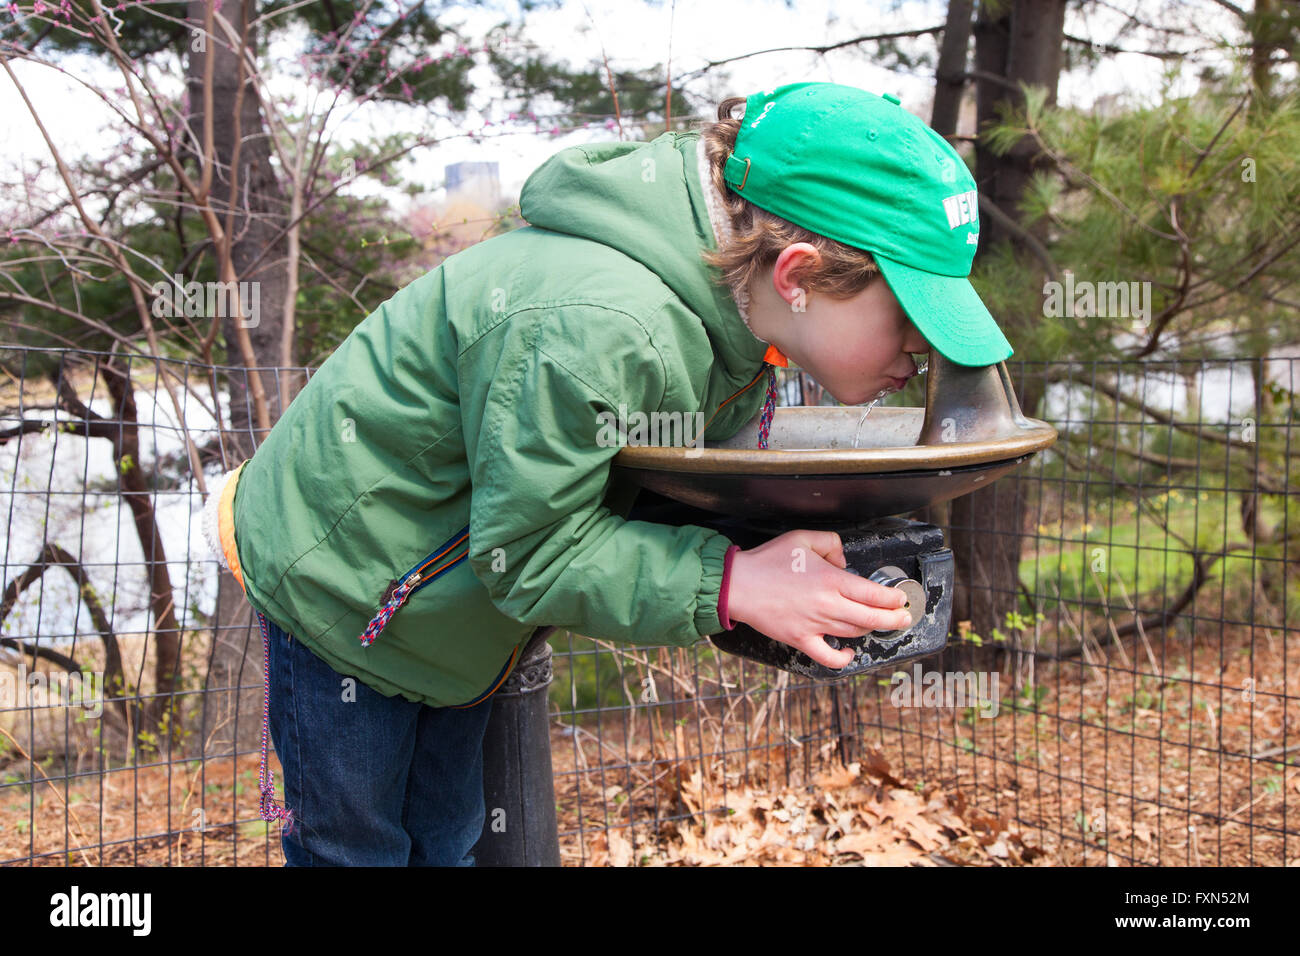 Six ans d'une fontaine d'eau potable dans la région de Central Park, New York City, États-Unis d'Amérique. Banque D'Images